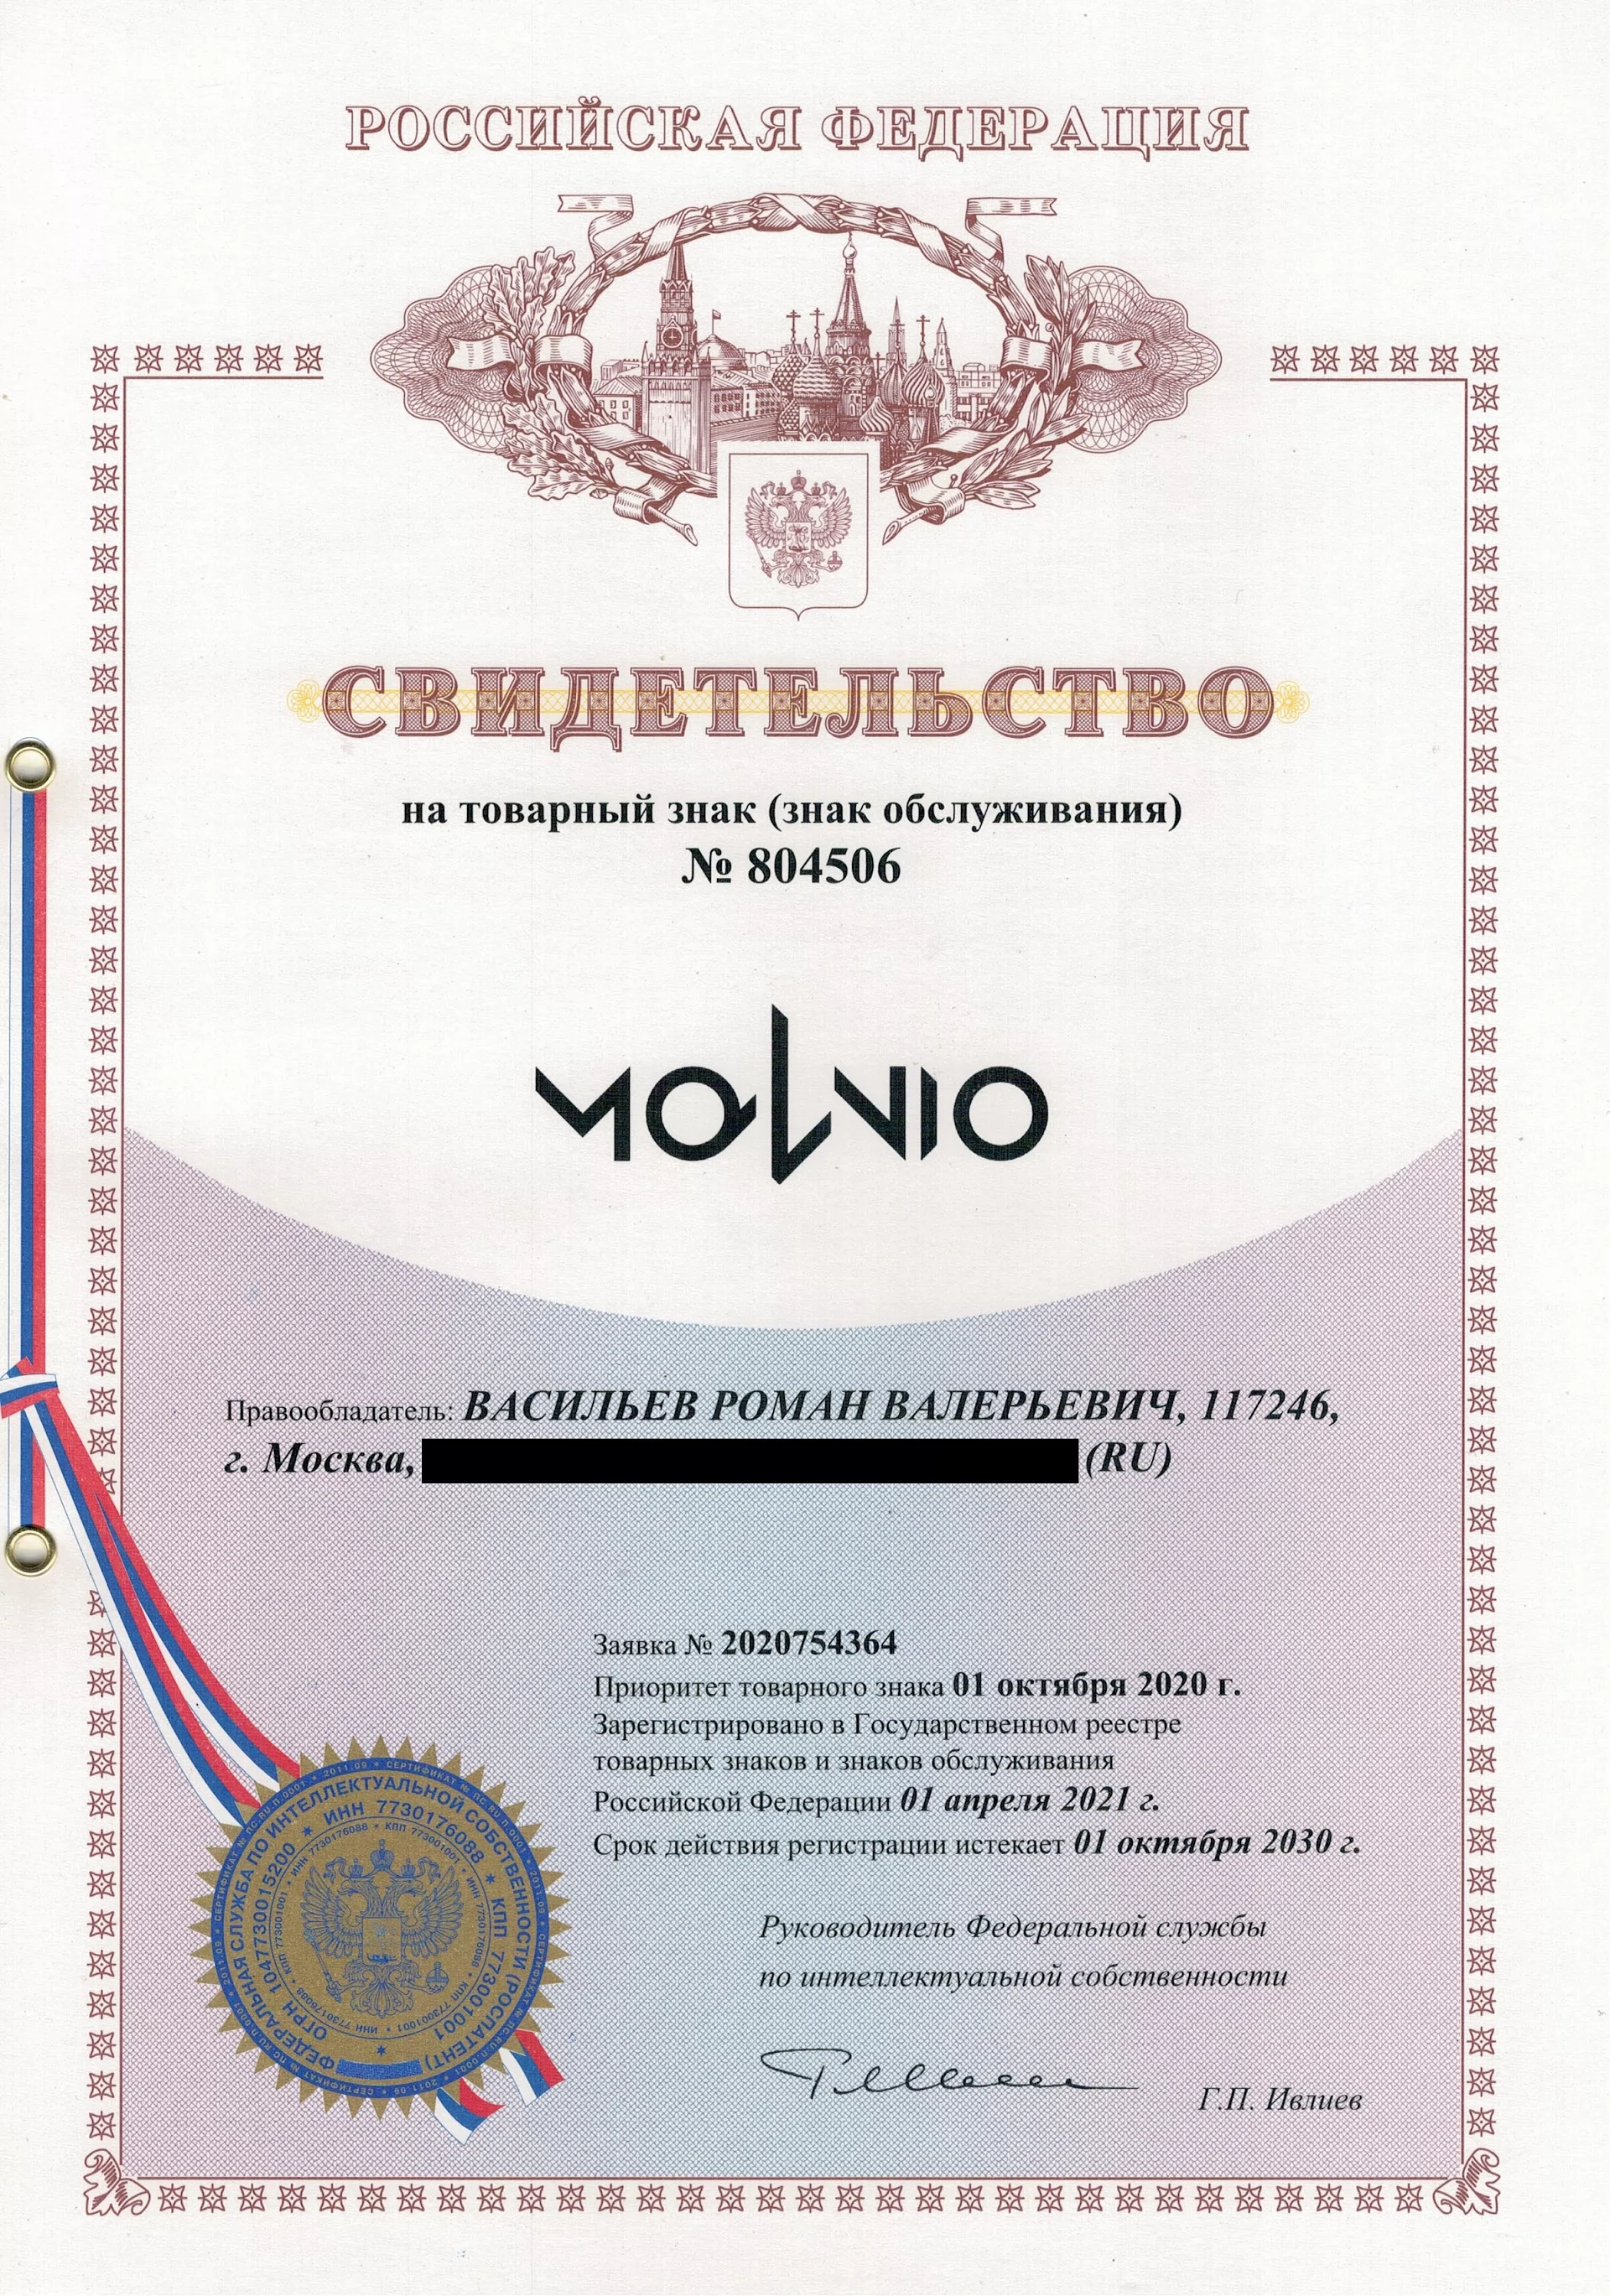 Товарный знак № 804506 – Molnio